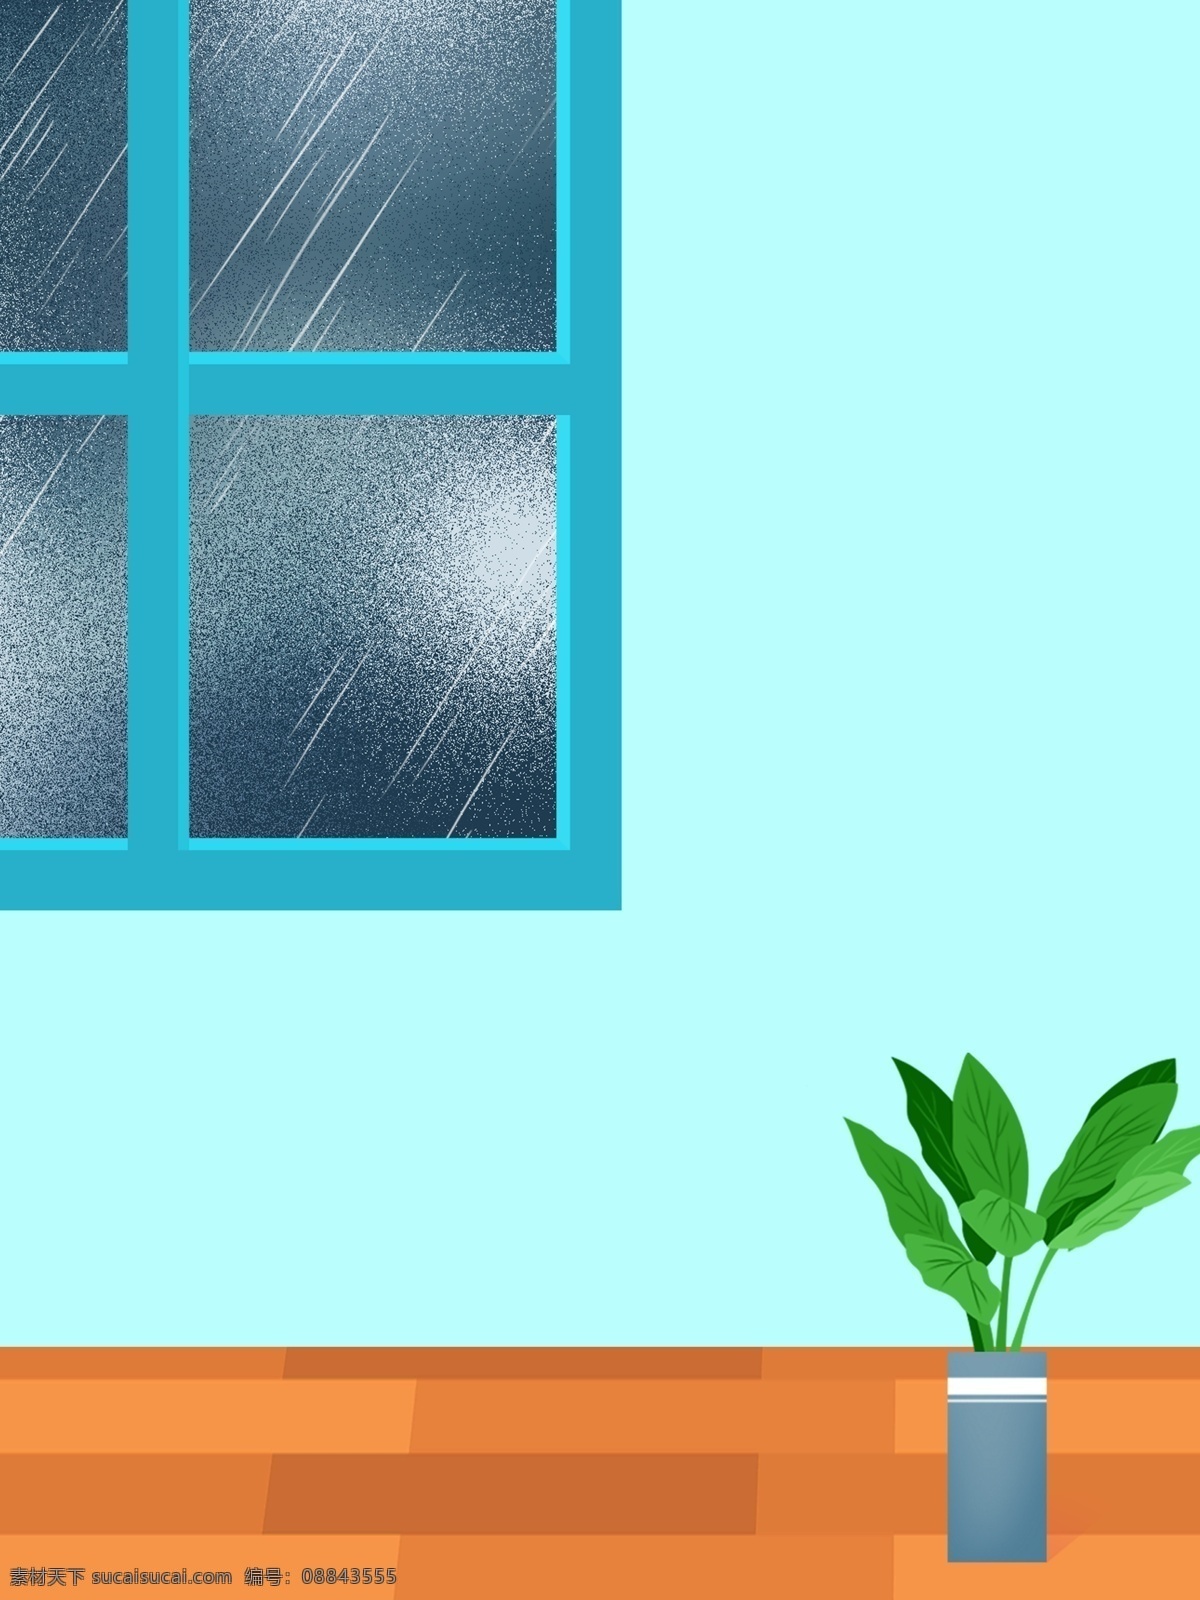 下雨 夜晚 室内 生活 插画 背景 通用背景 居家生活插画 手绘背景 生活插画背景 窗户 窗帘 盆栽 植物